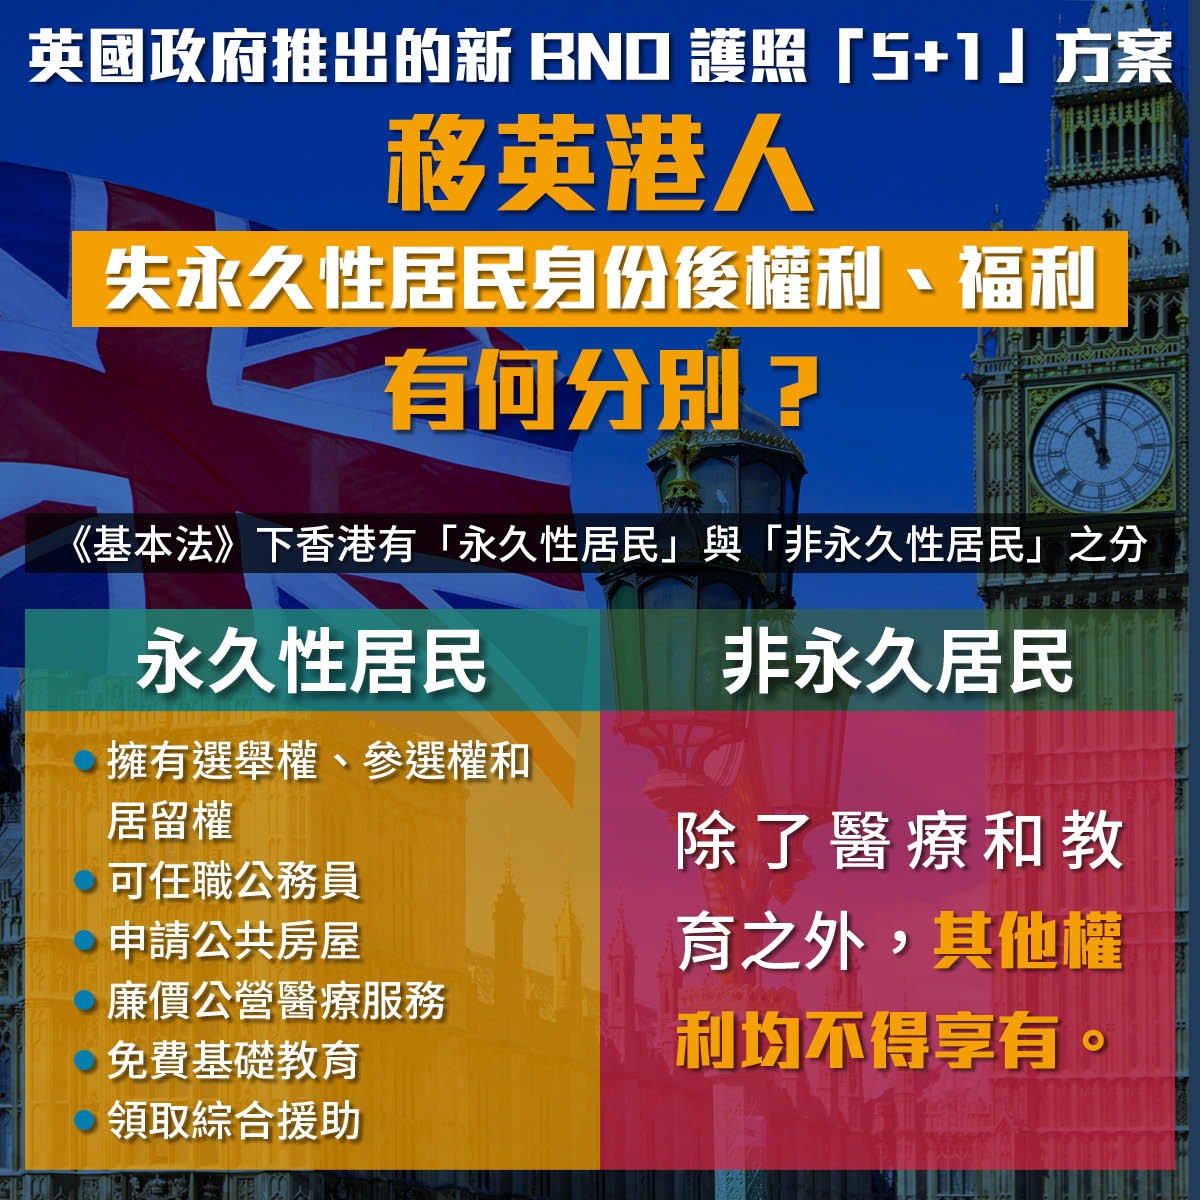 港人 二等公民 夢該醒了 入籍英國即放棄香港永居身份 港聞 點新聞